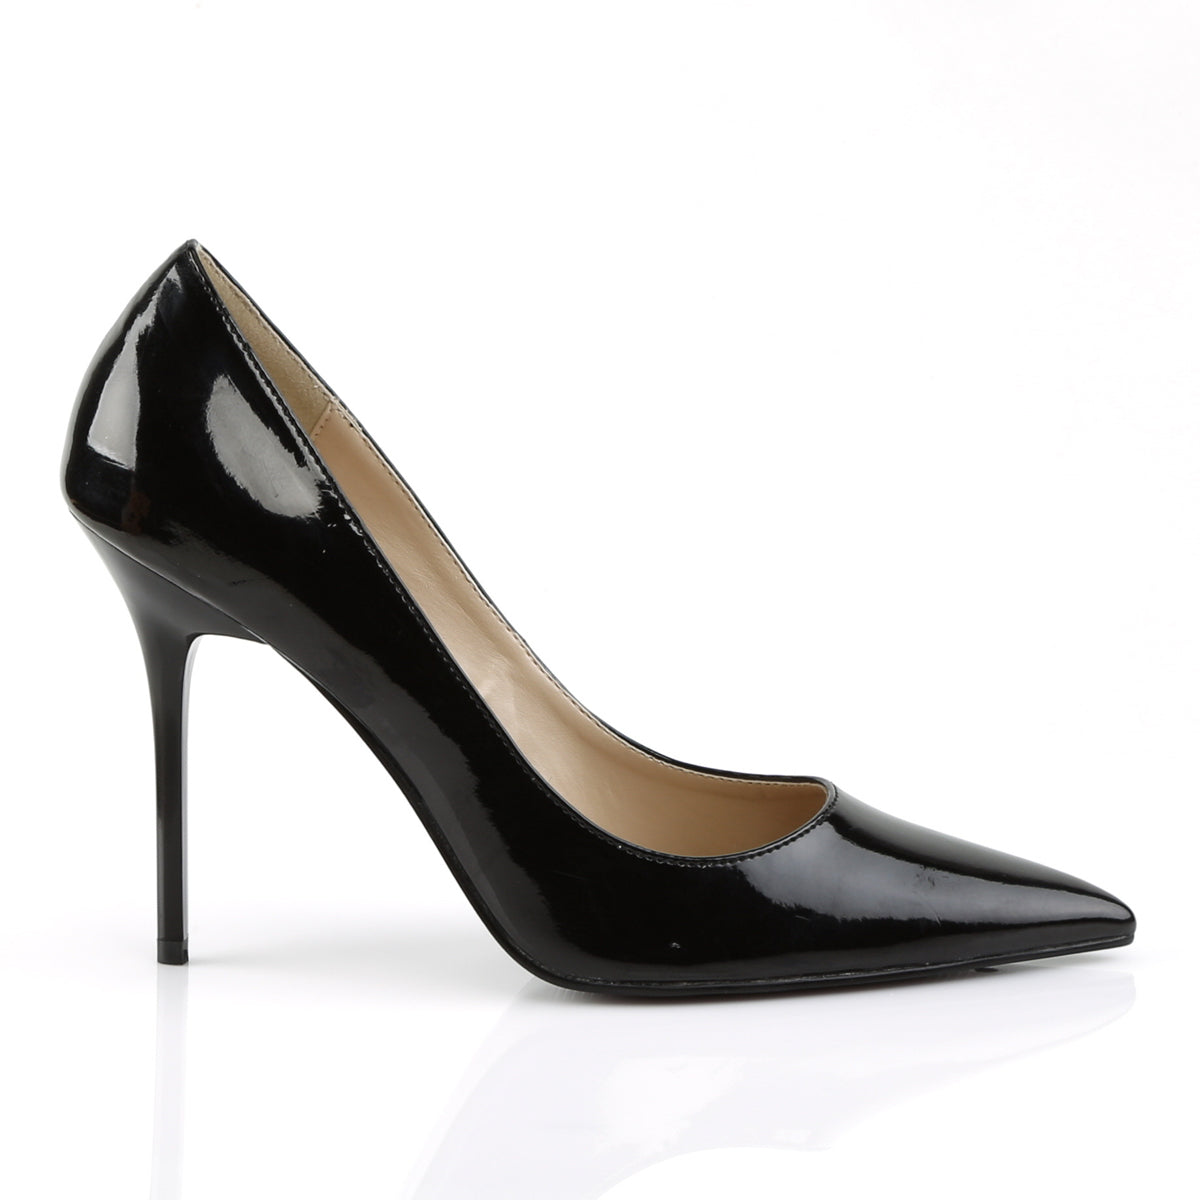 Buy Women's High Heels Online in Australia - A Shoe Addiction - heels ...